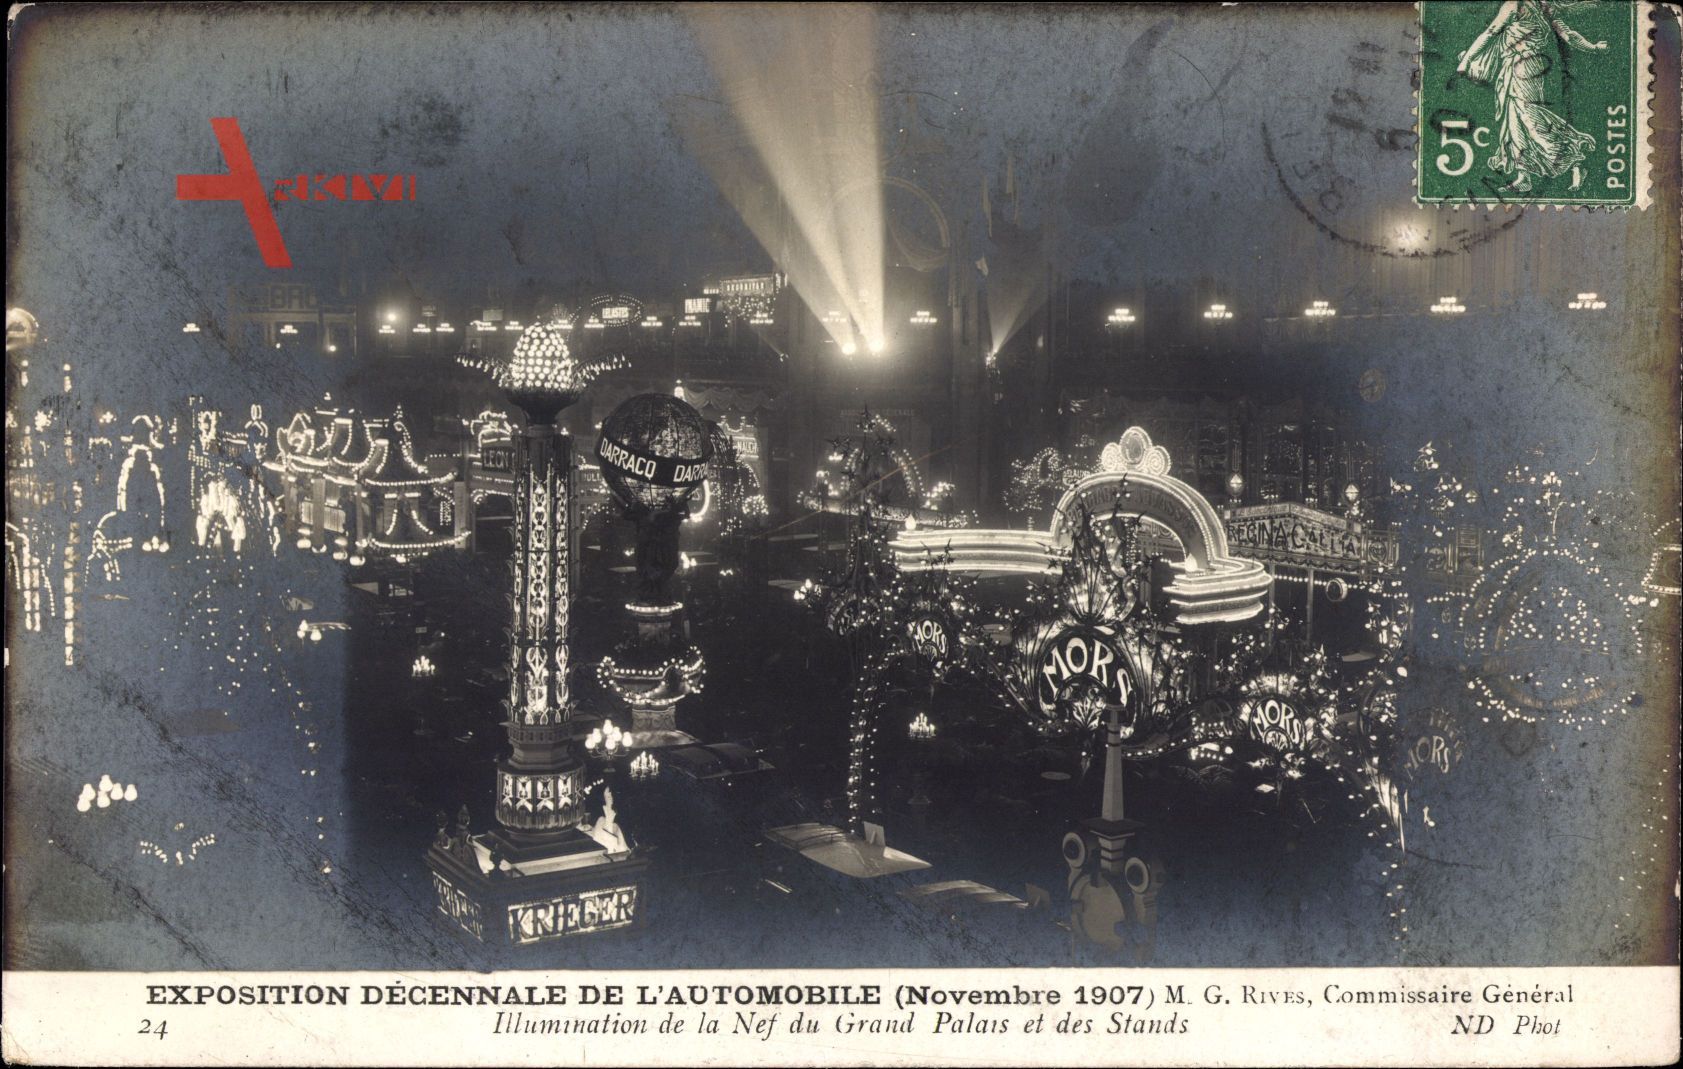 Exposition Décennale de lAutomobile, Nov 1907, Illumination